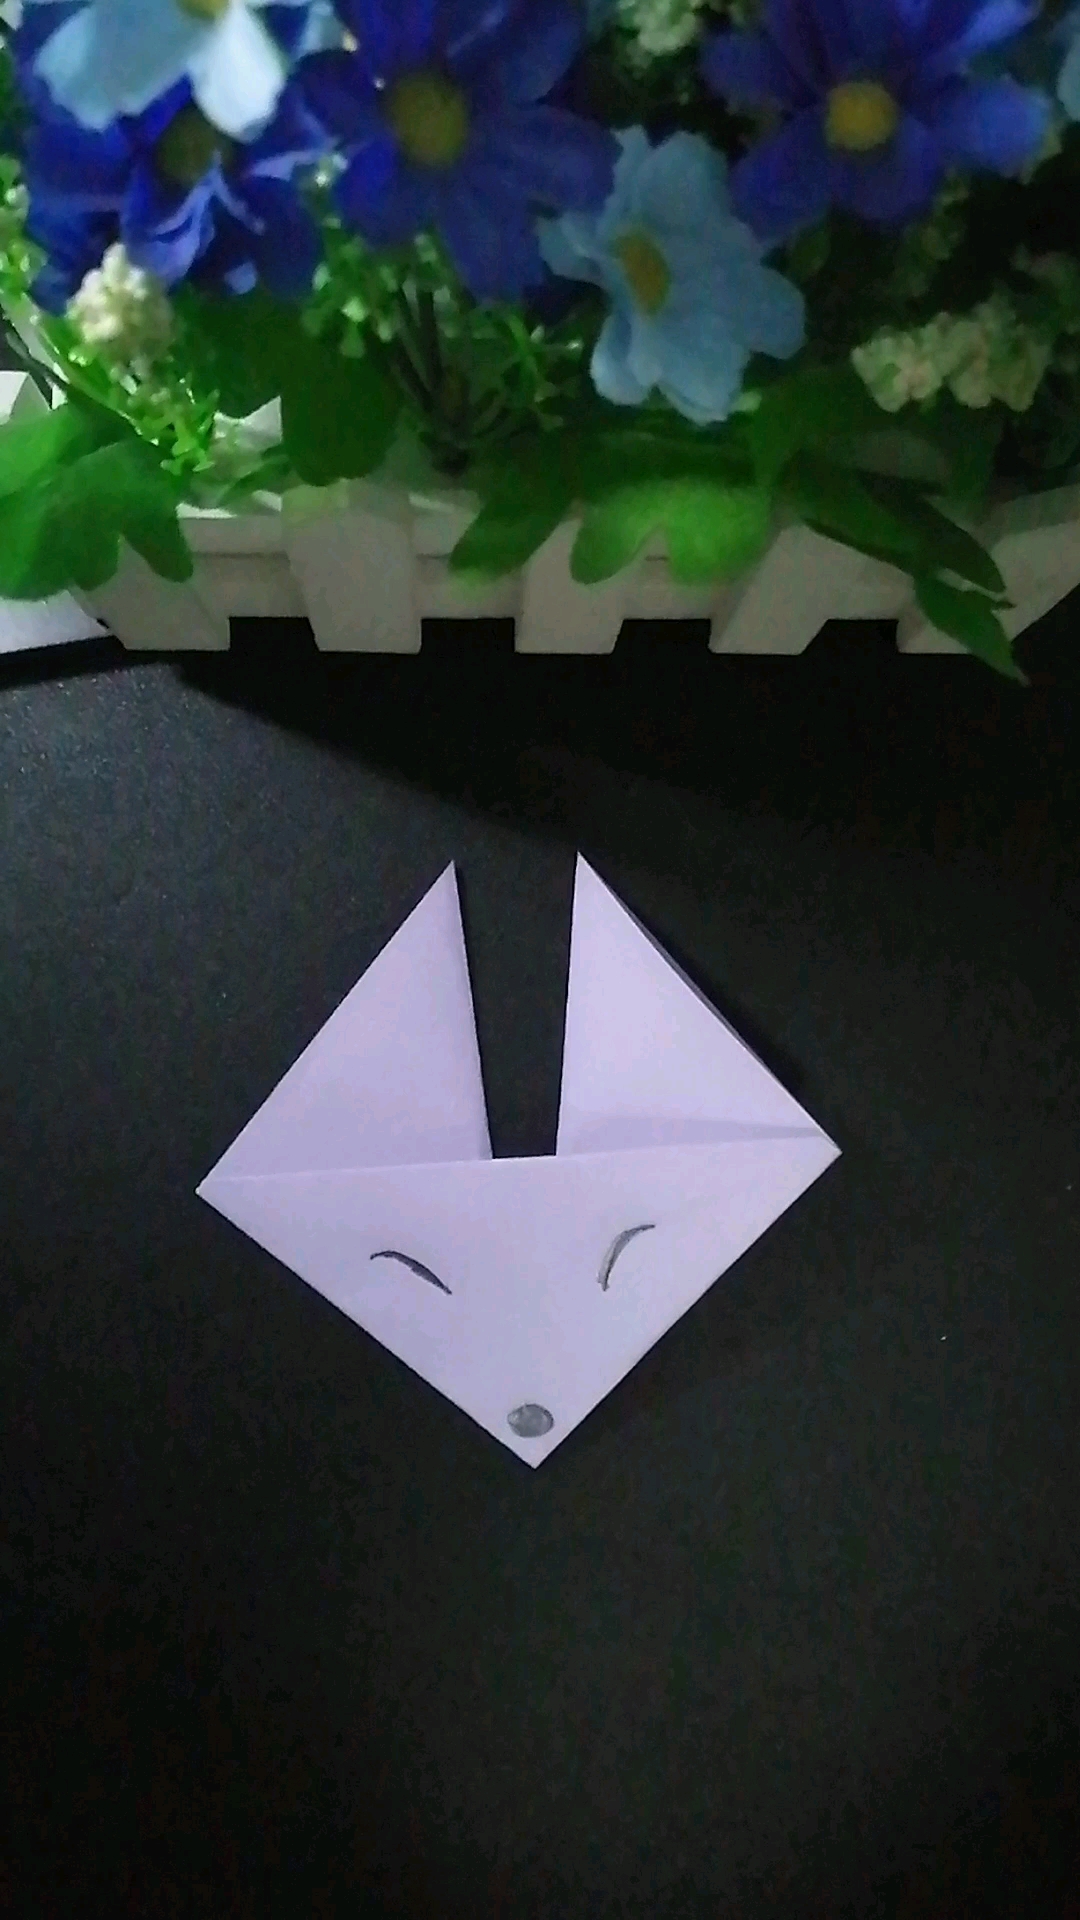 折纸小狐狸头简单折法图片